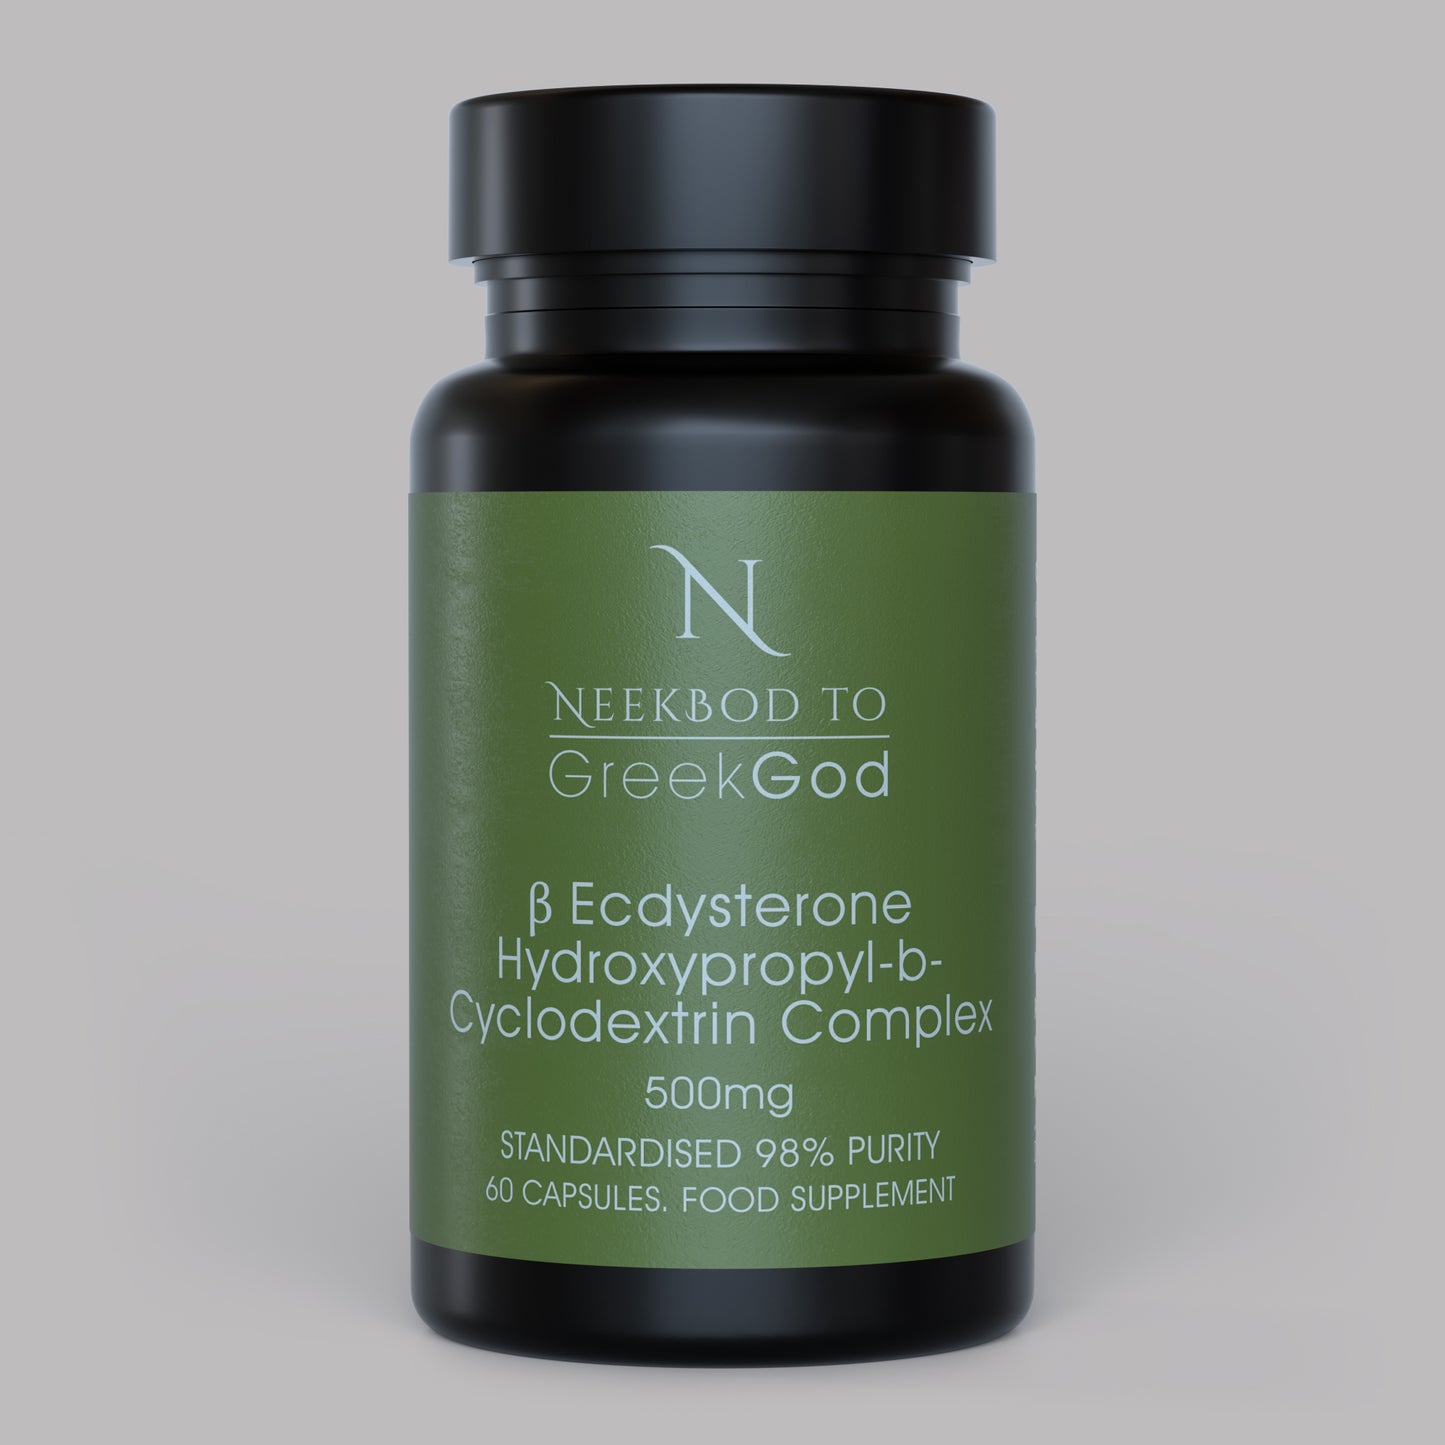 98%  βEcdysterone complexed with Hydroxypropyl-β-Cyclodextrin